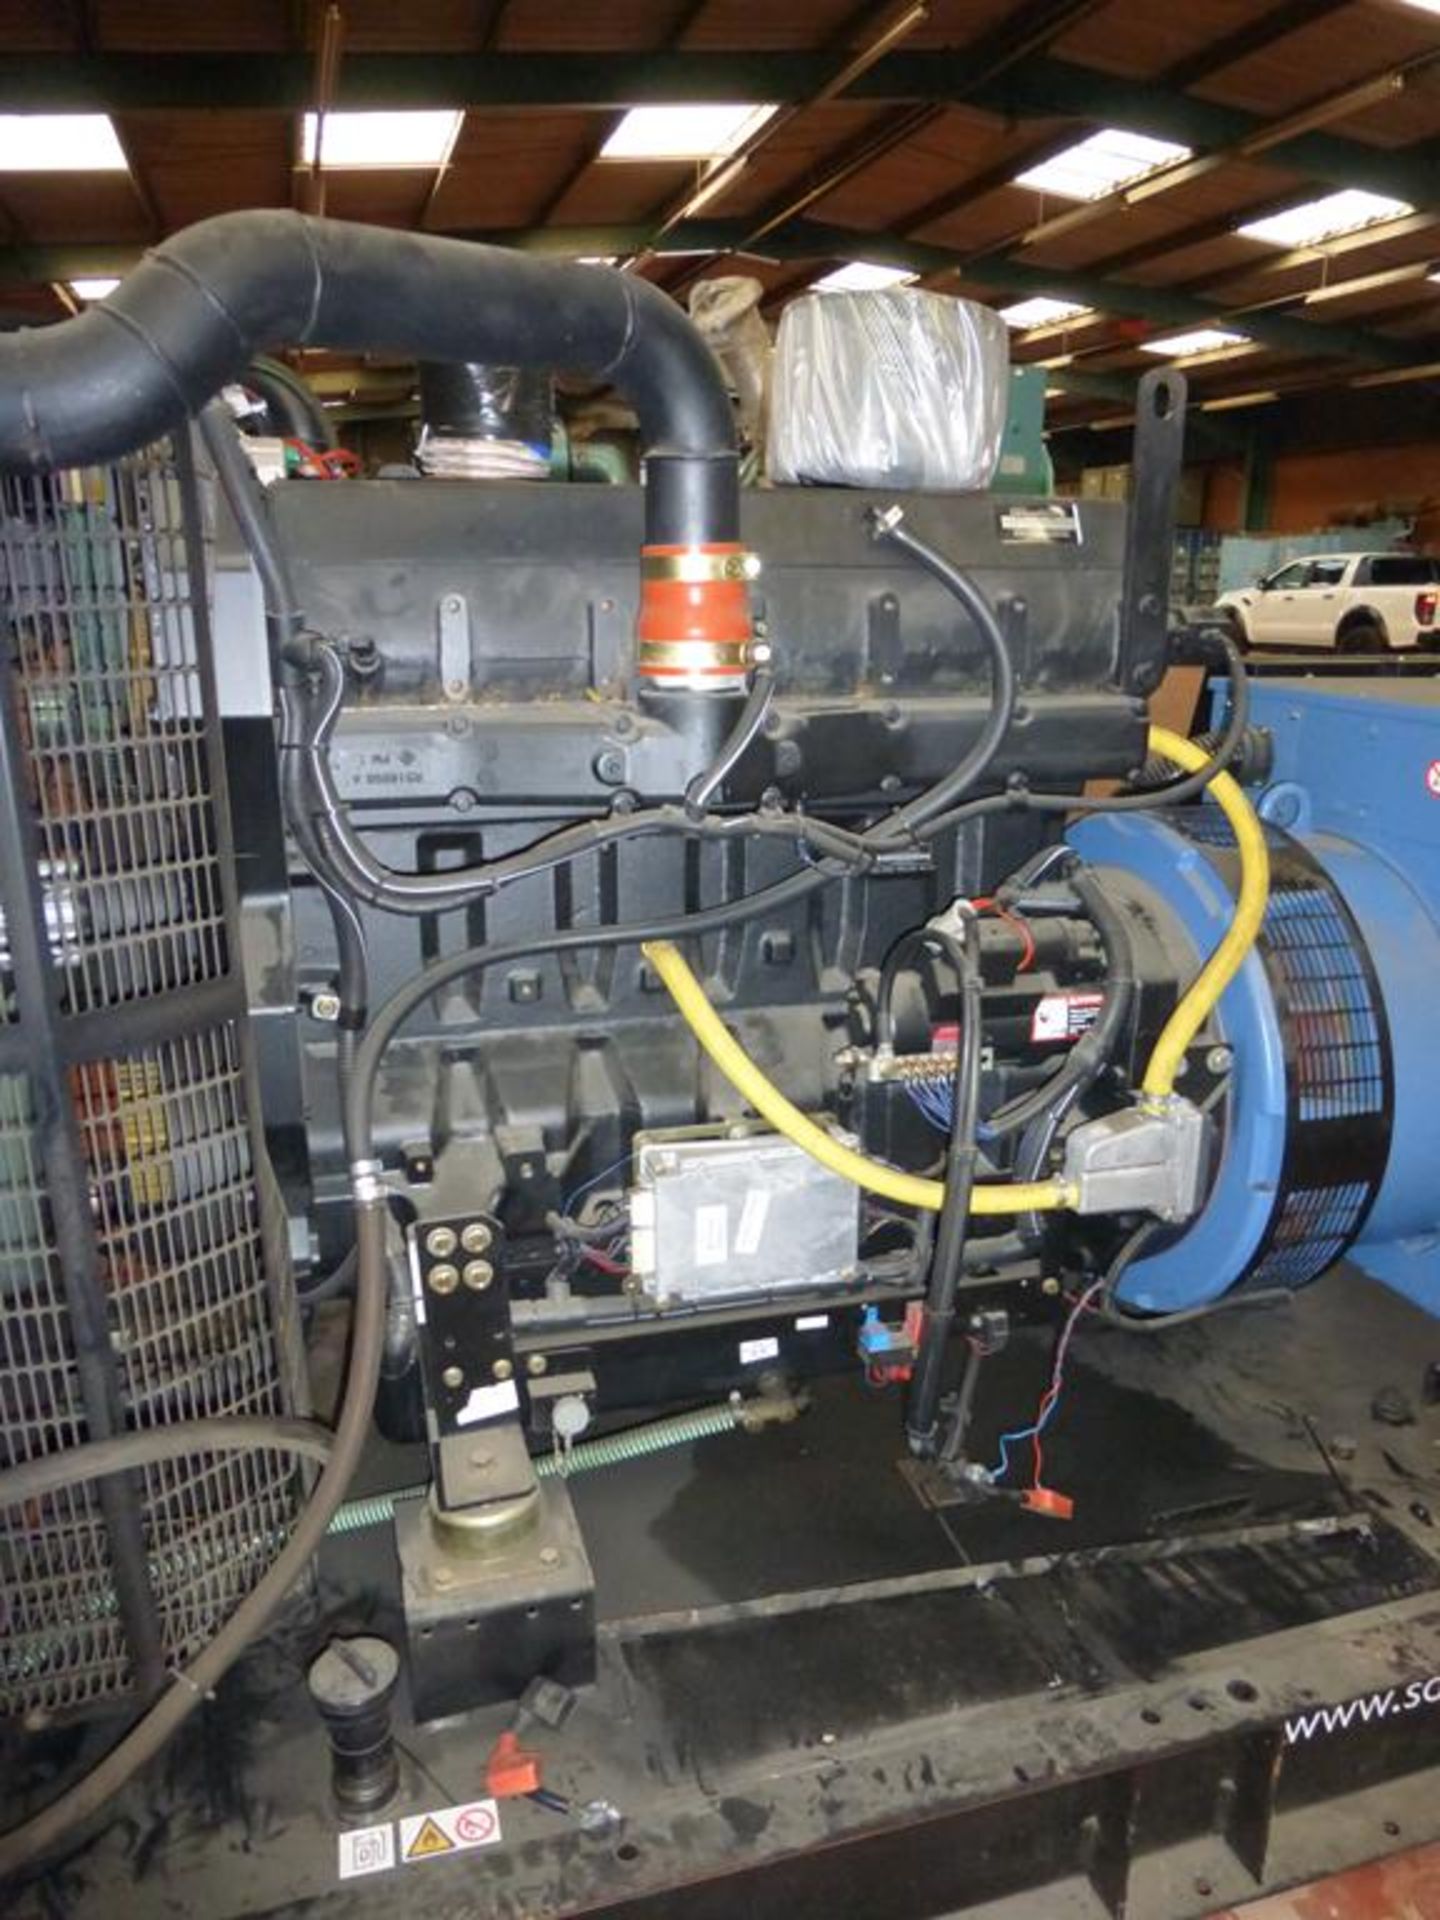 John Deere/Leroy Somer 365/400kVA Standby Generator - Image 2 of 6